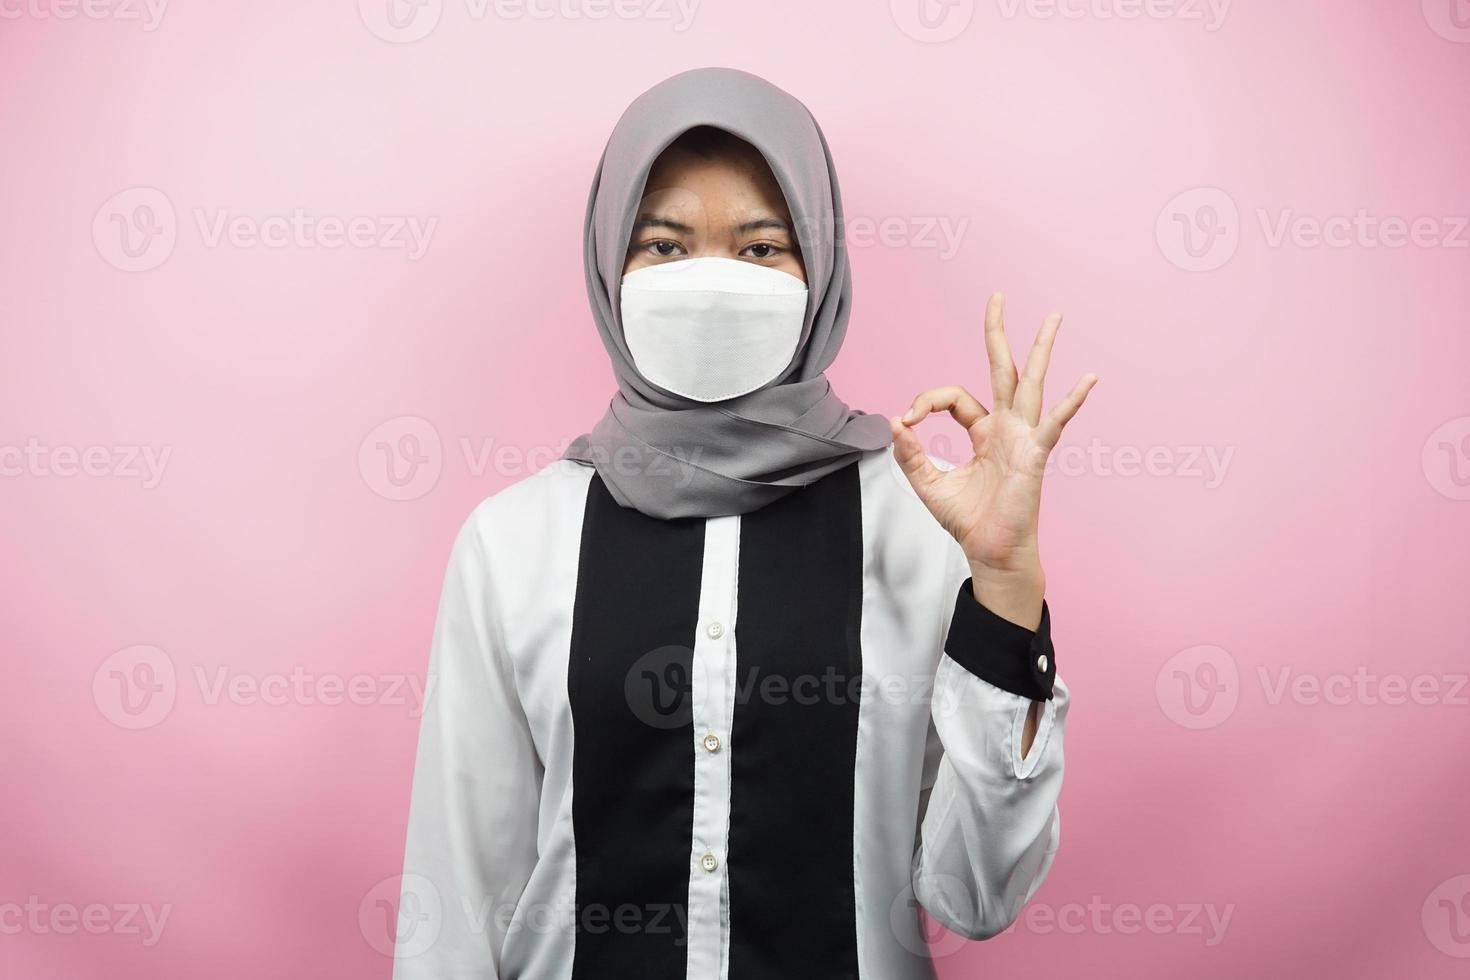 muslimsk kvinna som bär vita masker, anti-coronavirusrörelse, anti covid-19-rörelse, hälsorörelse som använder masker, med händer som visar ok-tecken, bra arbete, framgång, seger, isolerad på rosa bakgrund foto